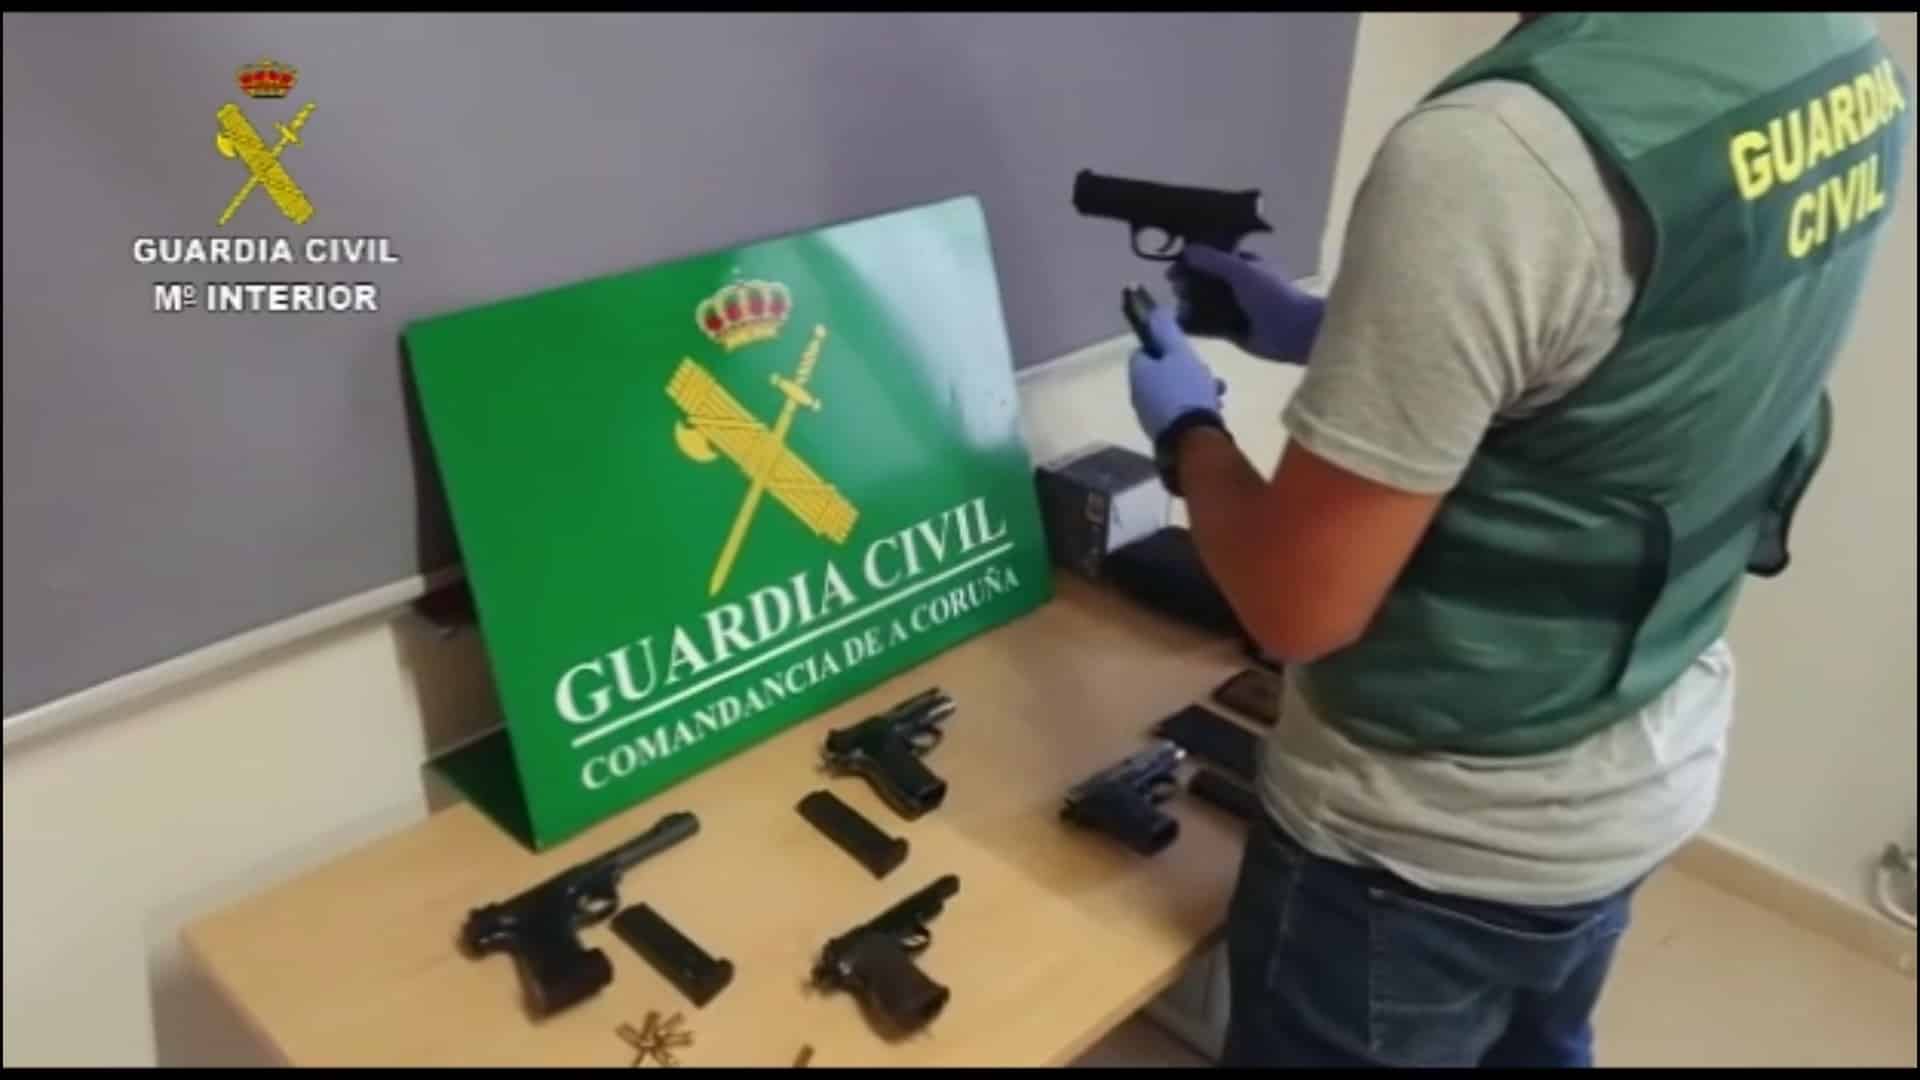 Las armas incautadas en la Costa da Morte | GUARDIA CIVIL